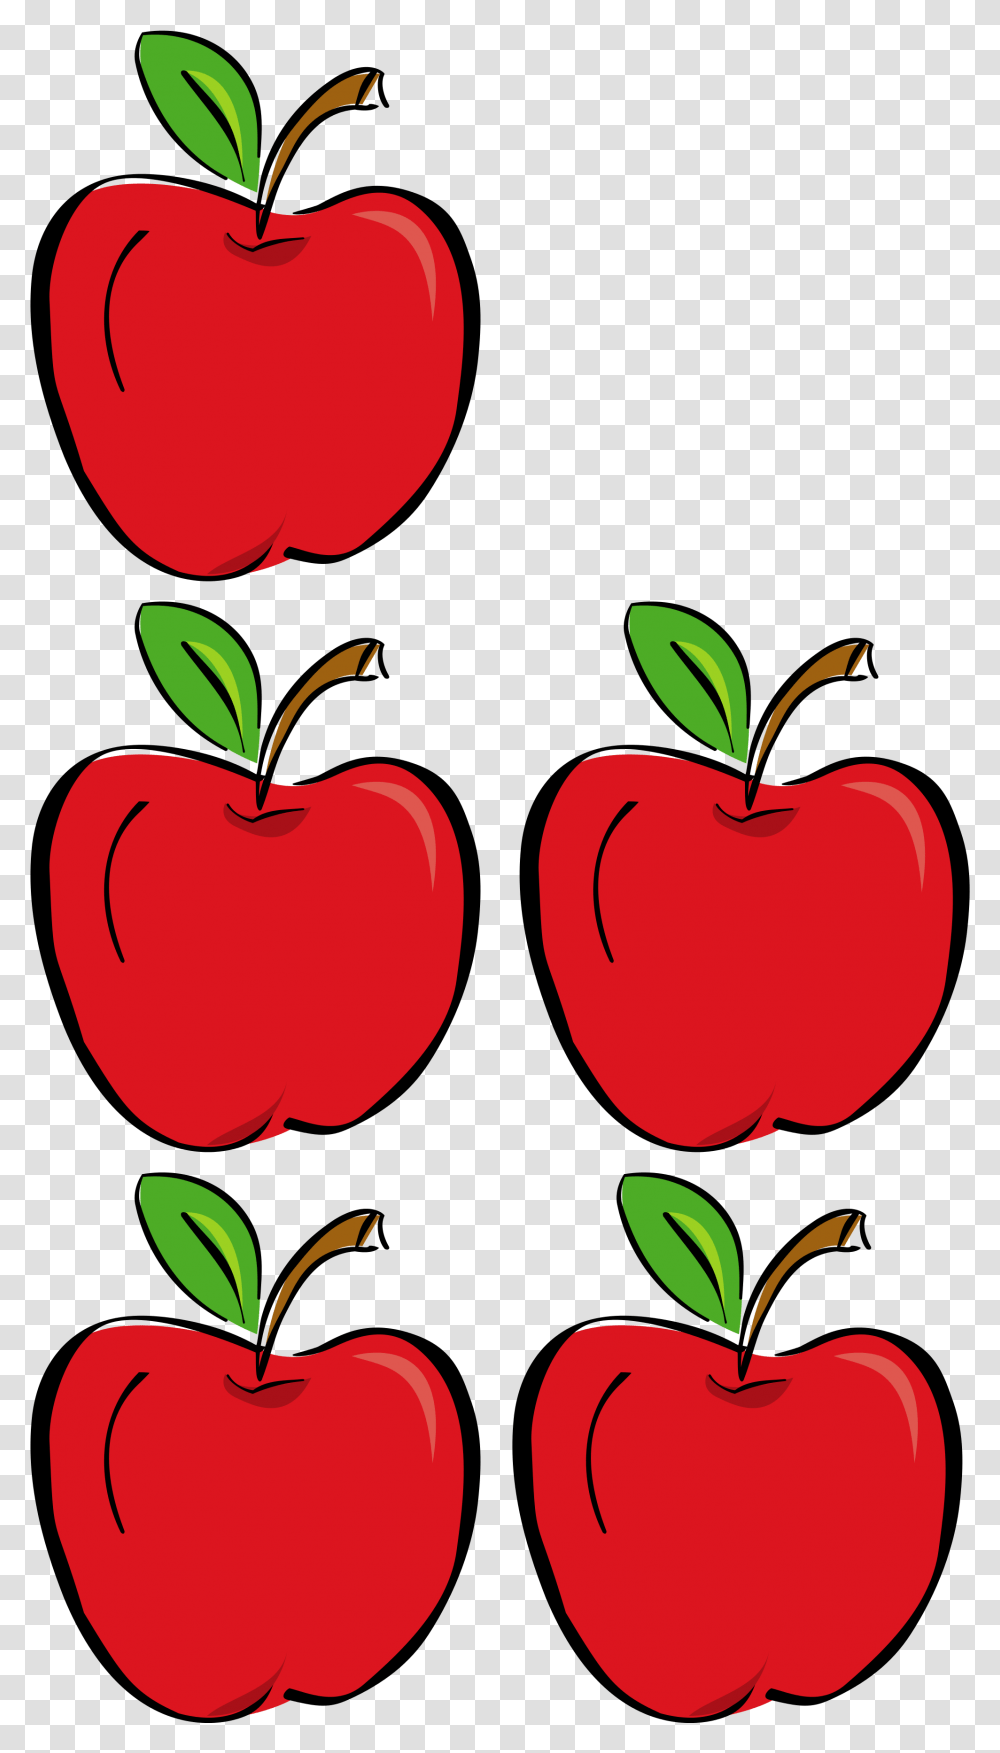 Free Photo Five Apples Apples Diet Five Free Download Conjuntos De 5 Elementos, Plant, Fruit, Food, Graphics Transparent Png